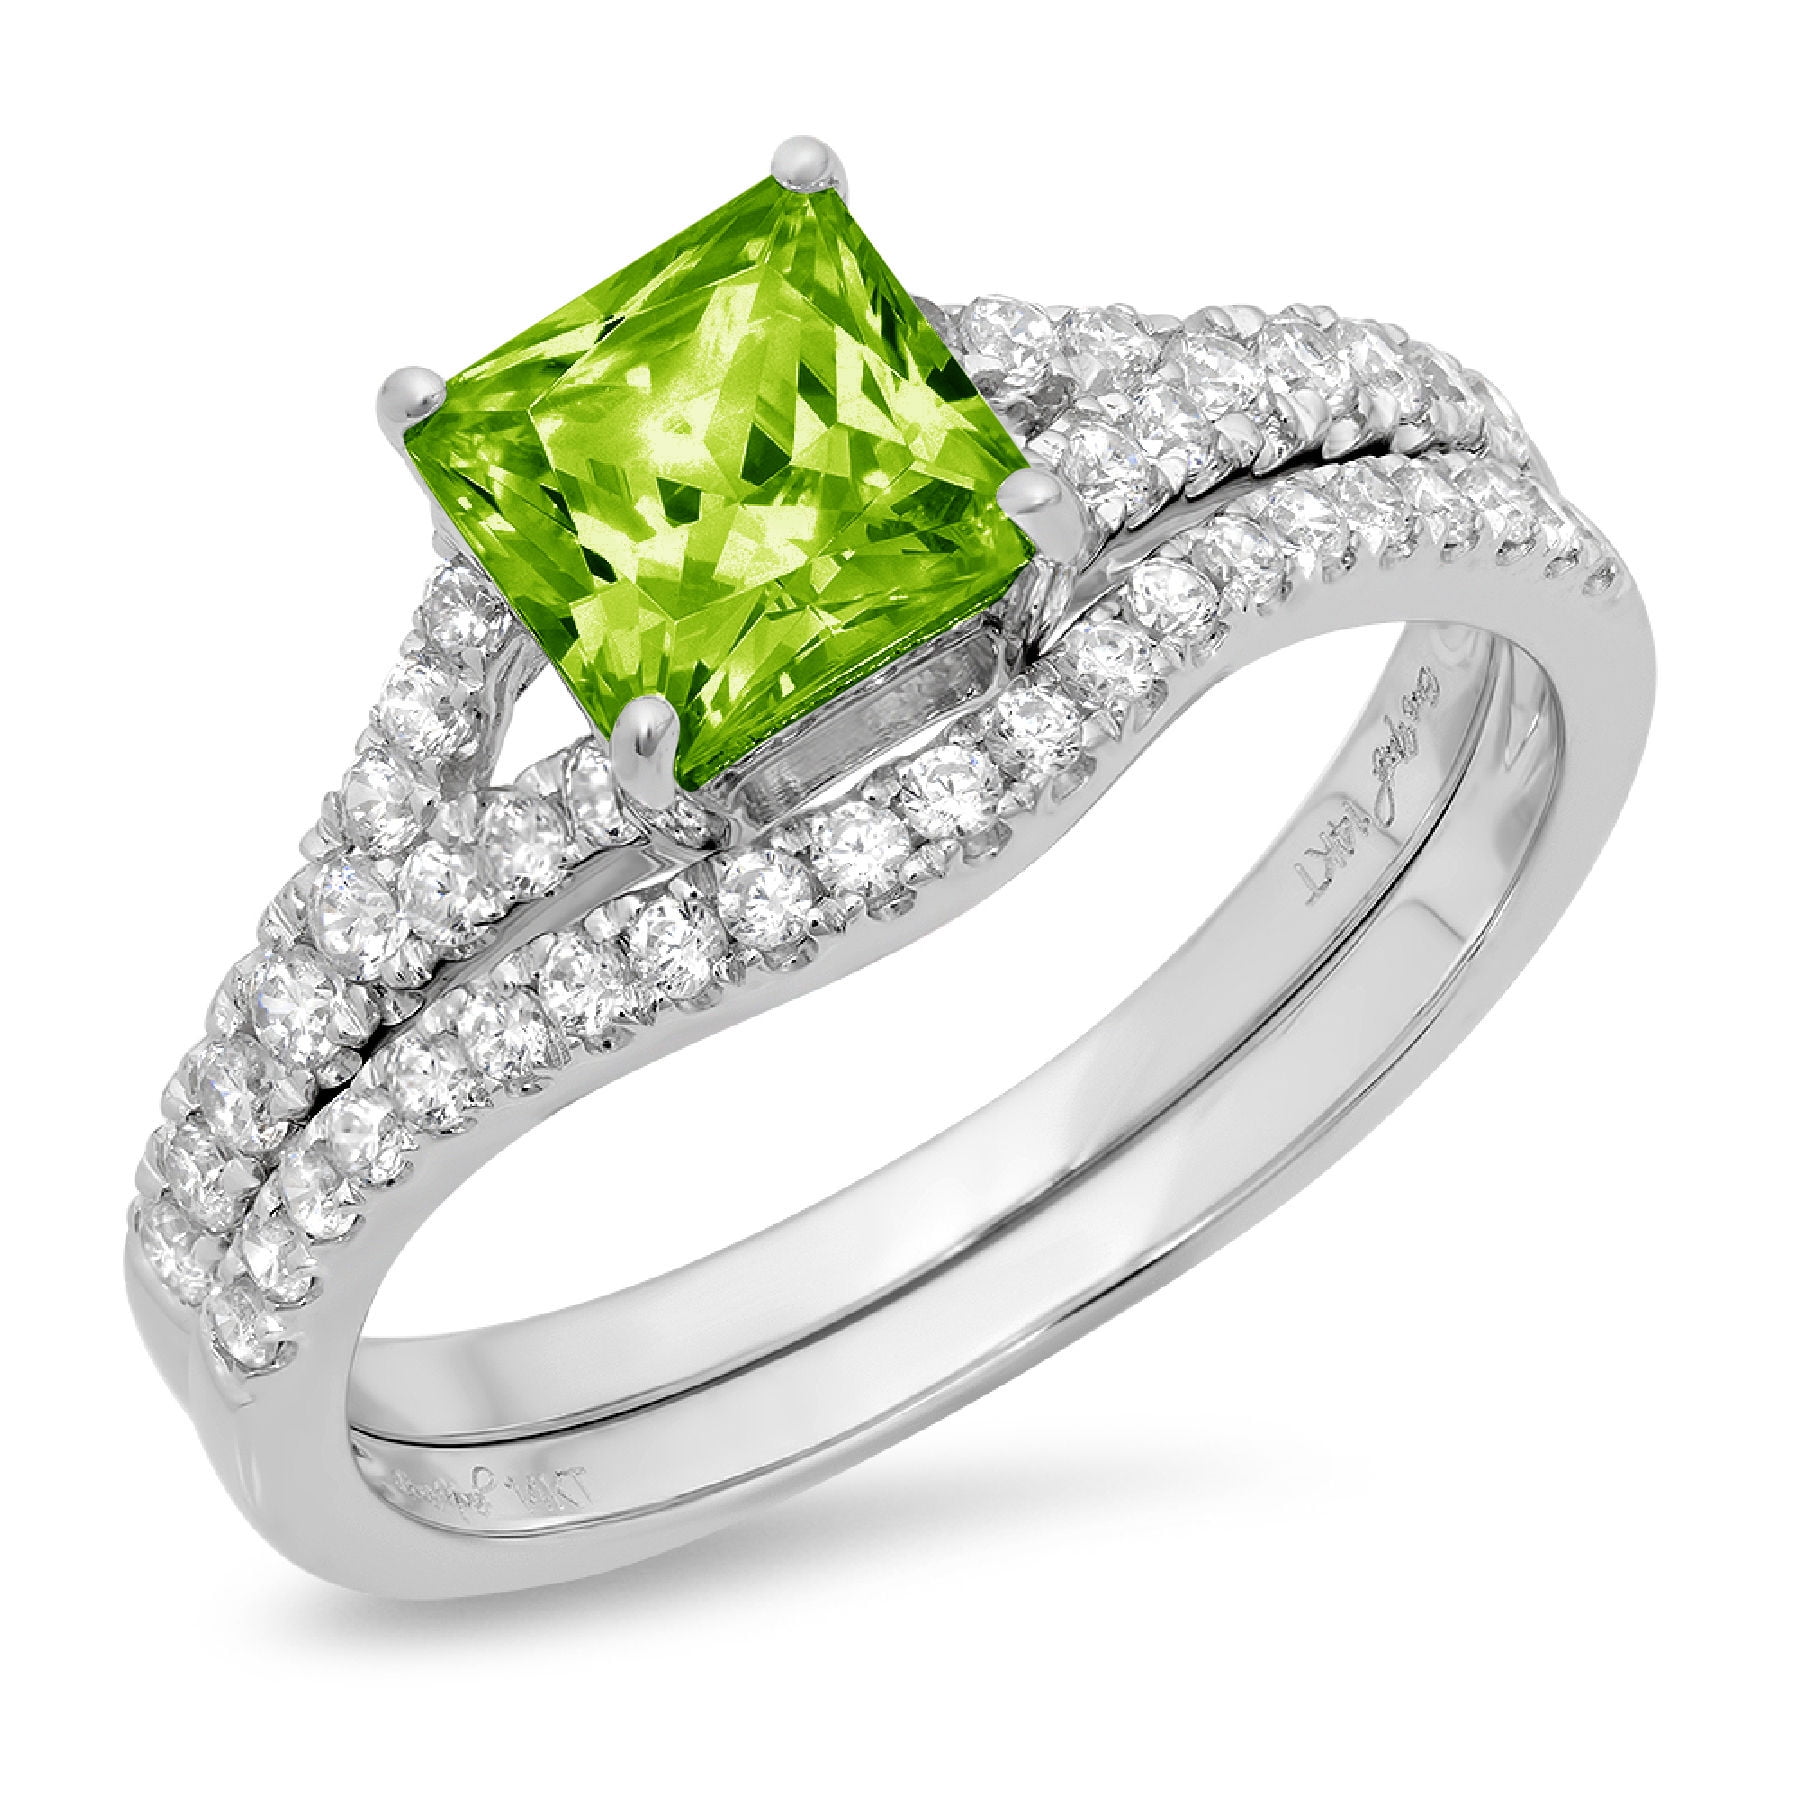 8 The Sun Jewelry Women Fashion White Gold Princess Cut Peridot Ring Proposal Jewelry New Sz 6-10